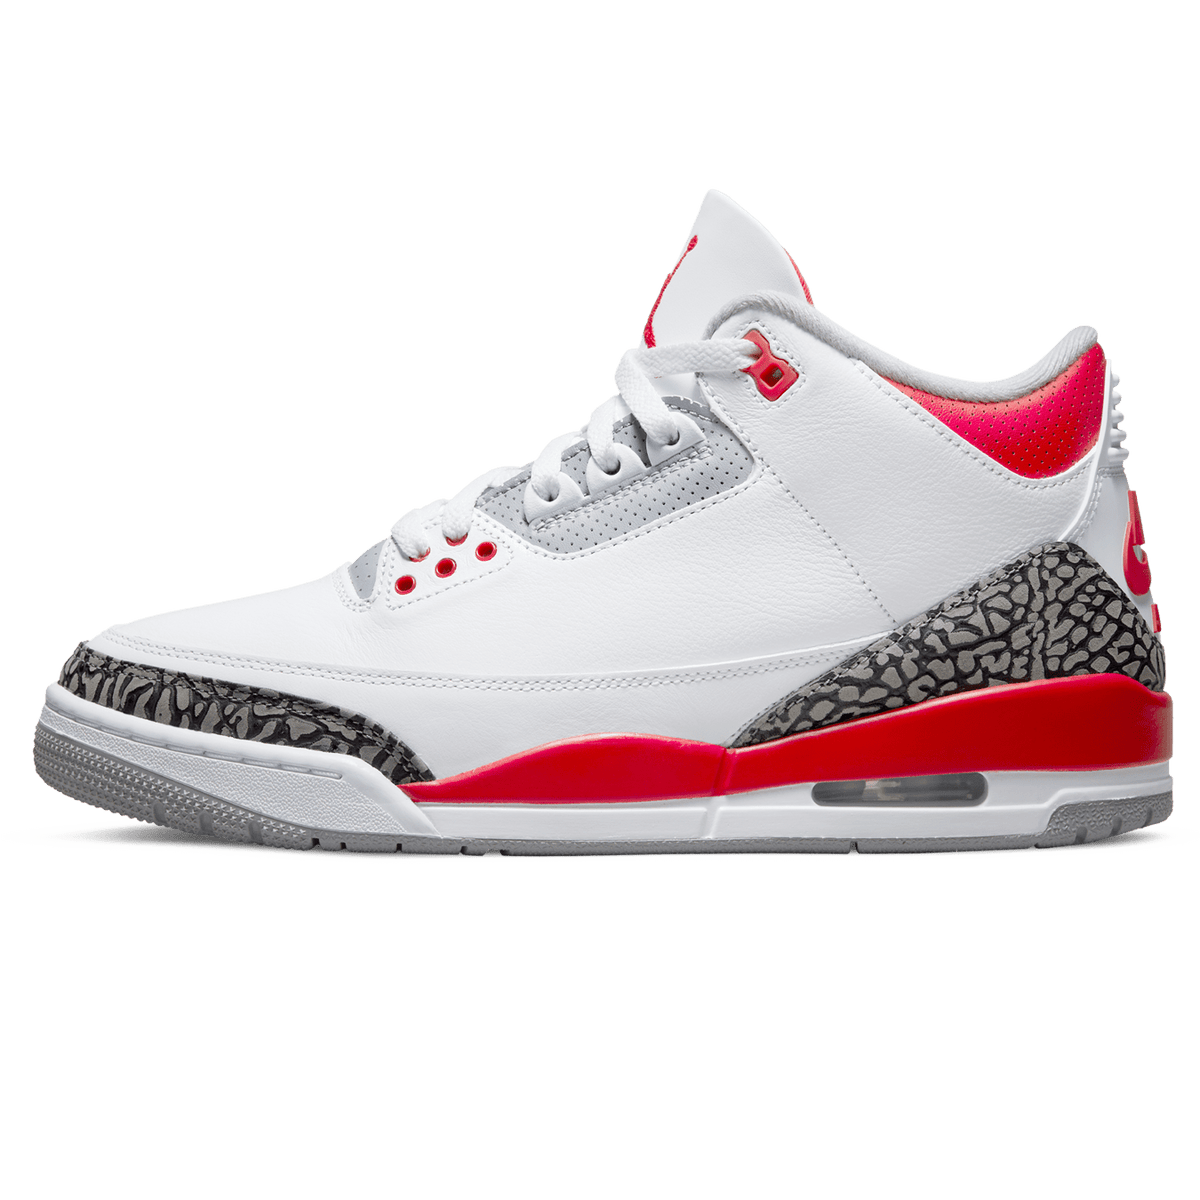 Air Jordan 3 Retro 'Fire Red' 2022 - Kick Game